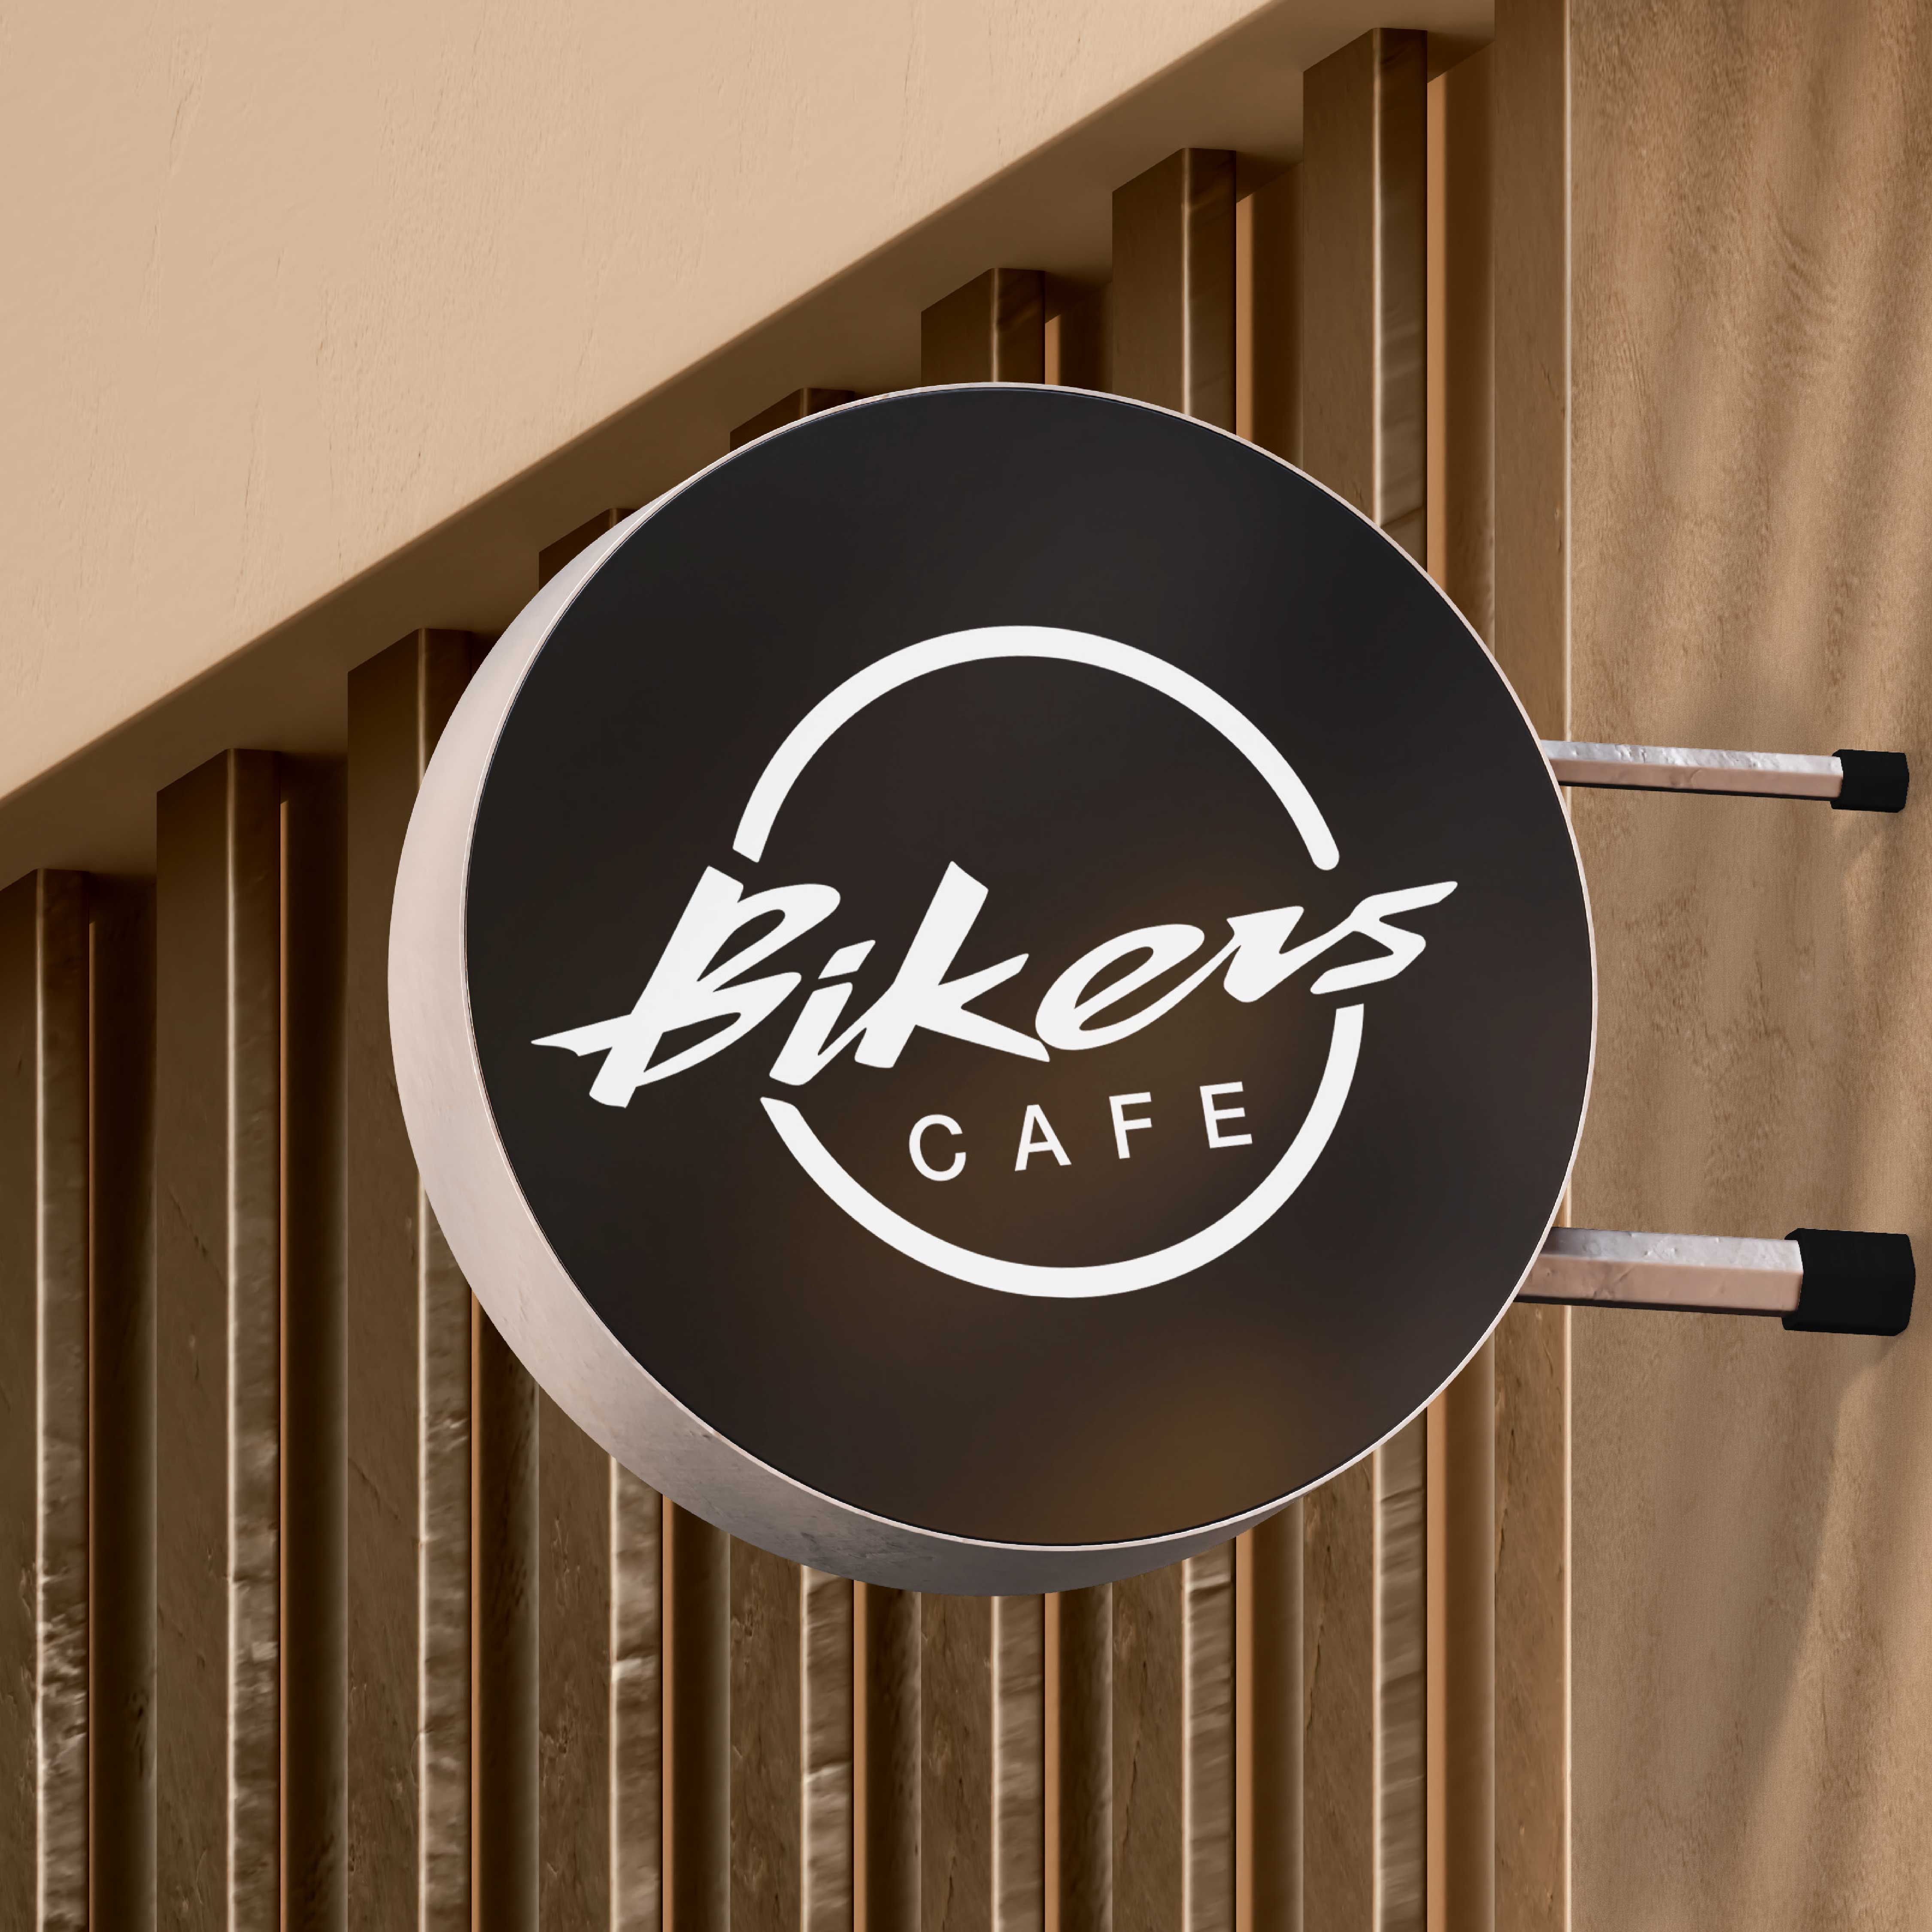 Bikerscafe